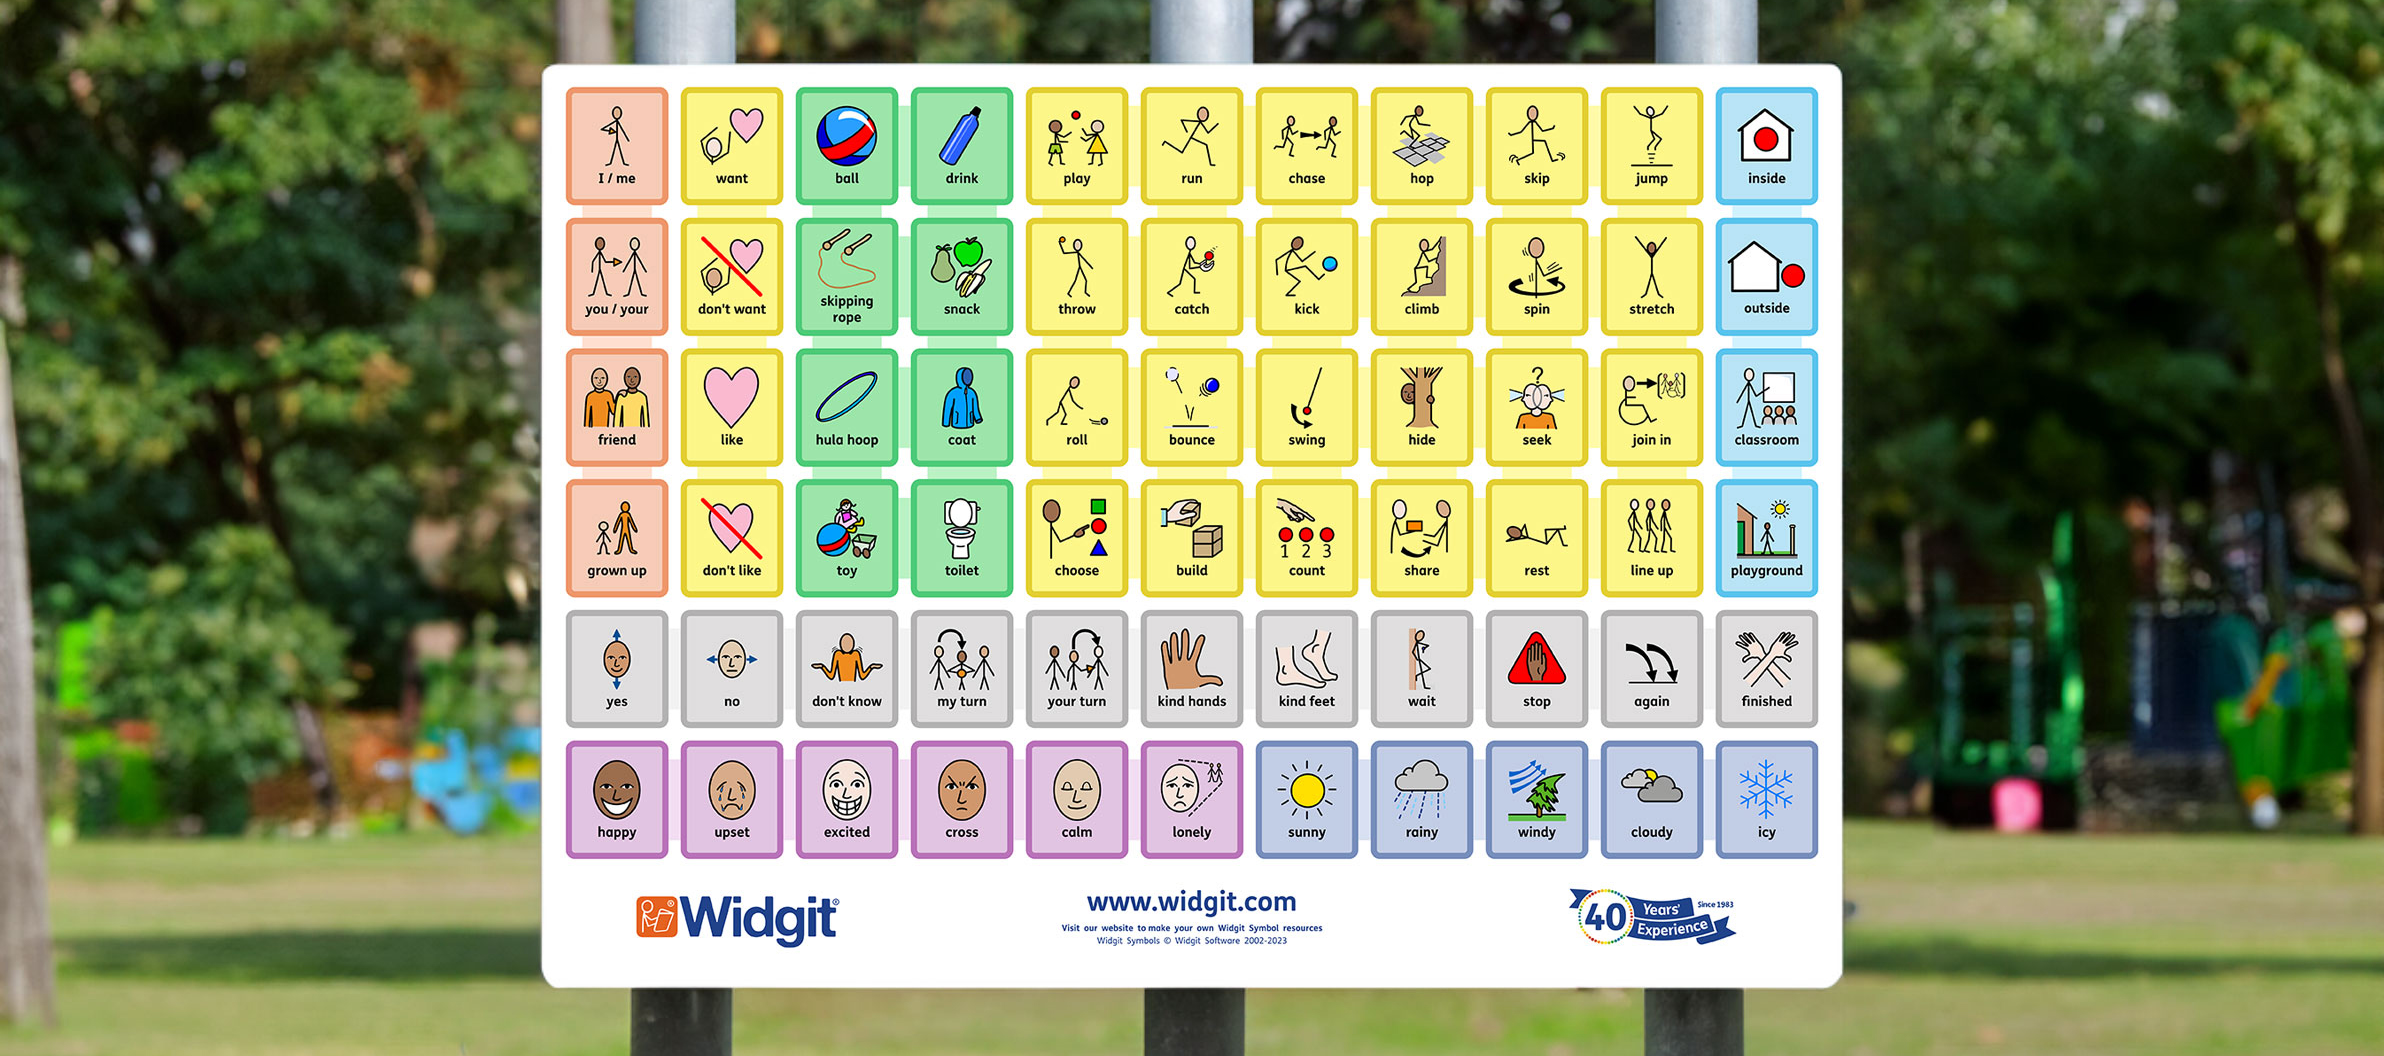 Widgit Playground Board